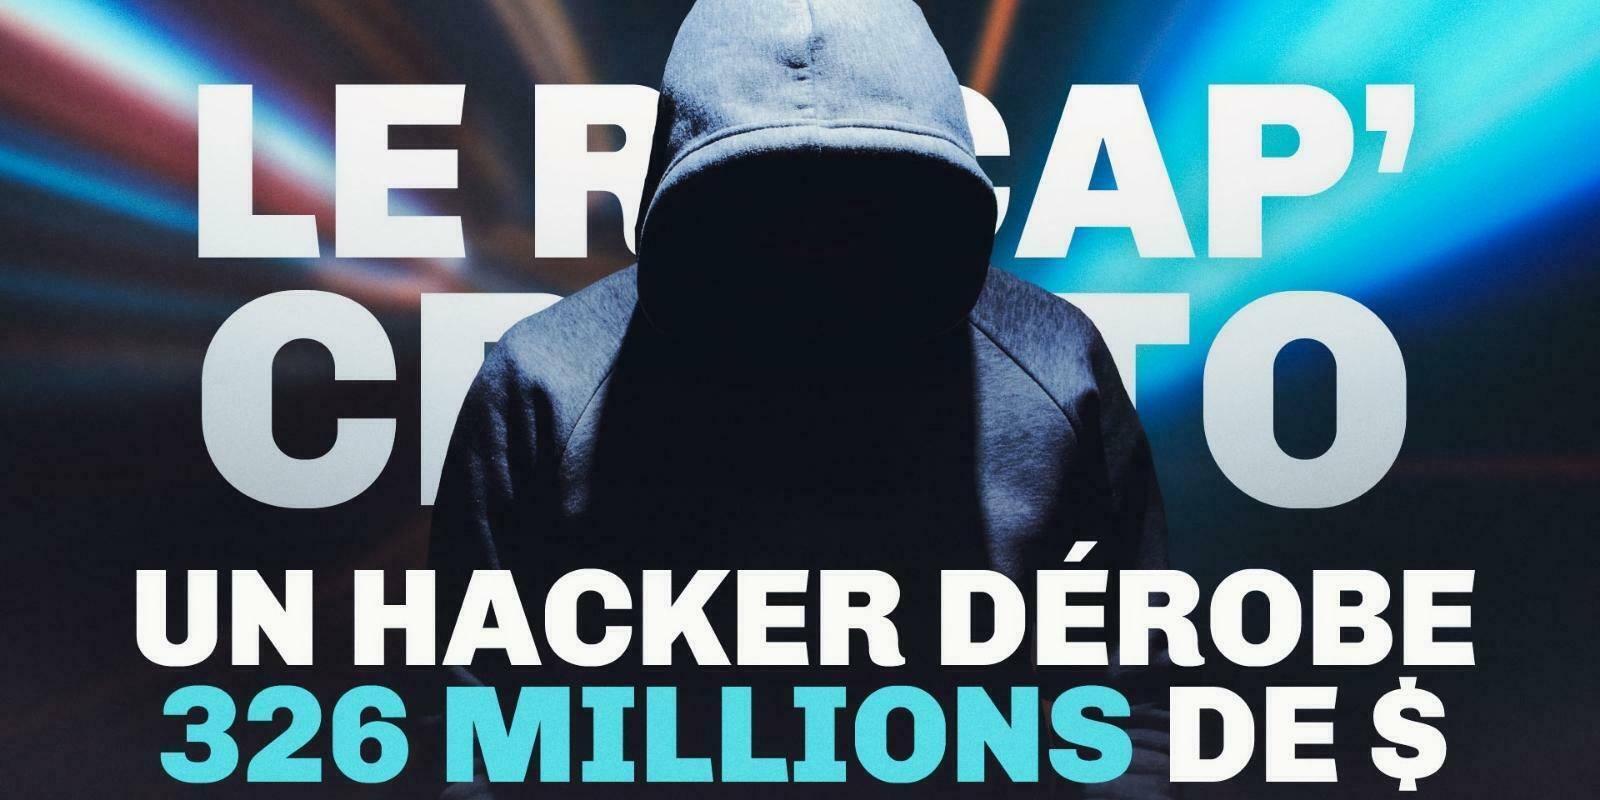 Le Récap' Crypto #4 – Un hacker dérobe 320 millions de dollars via le protocole Wormhole